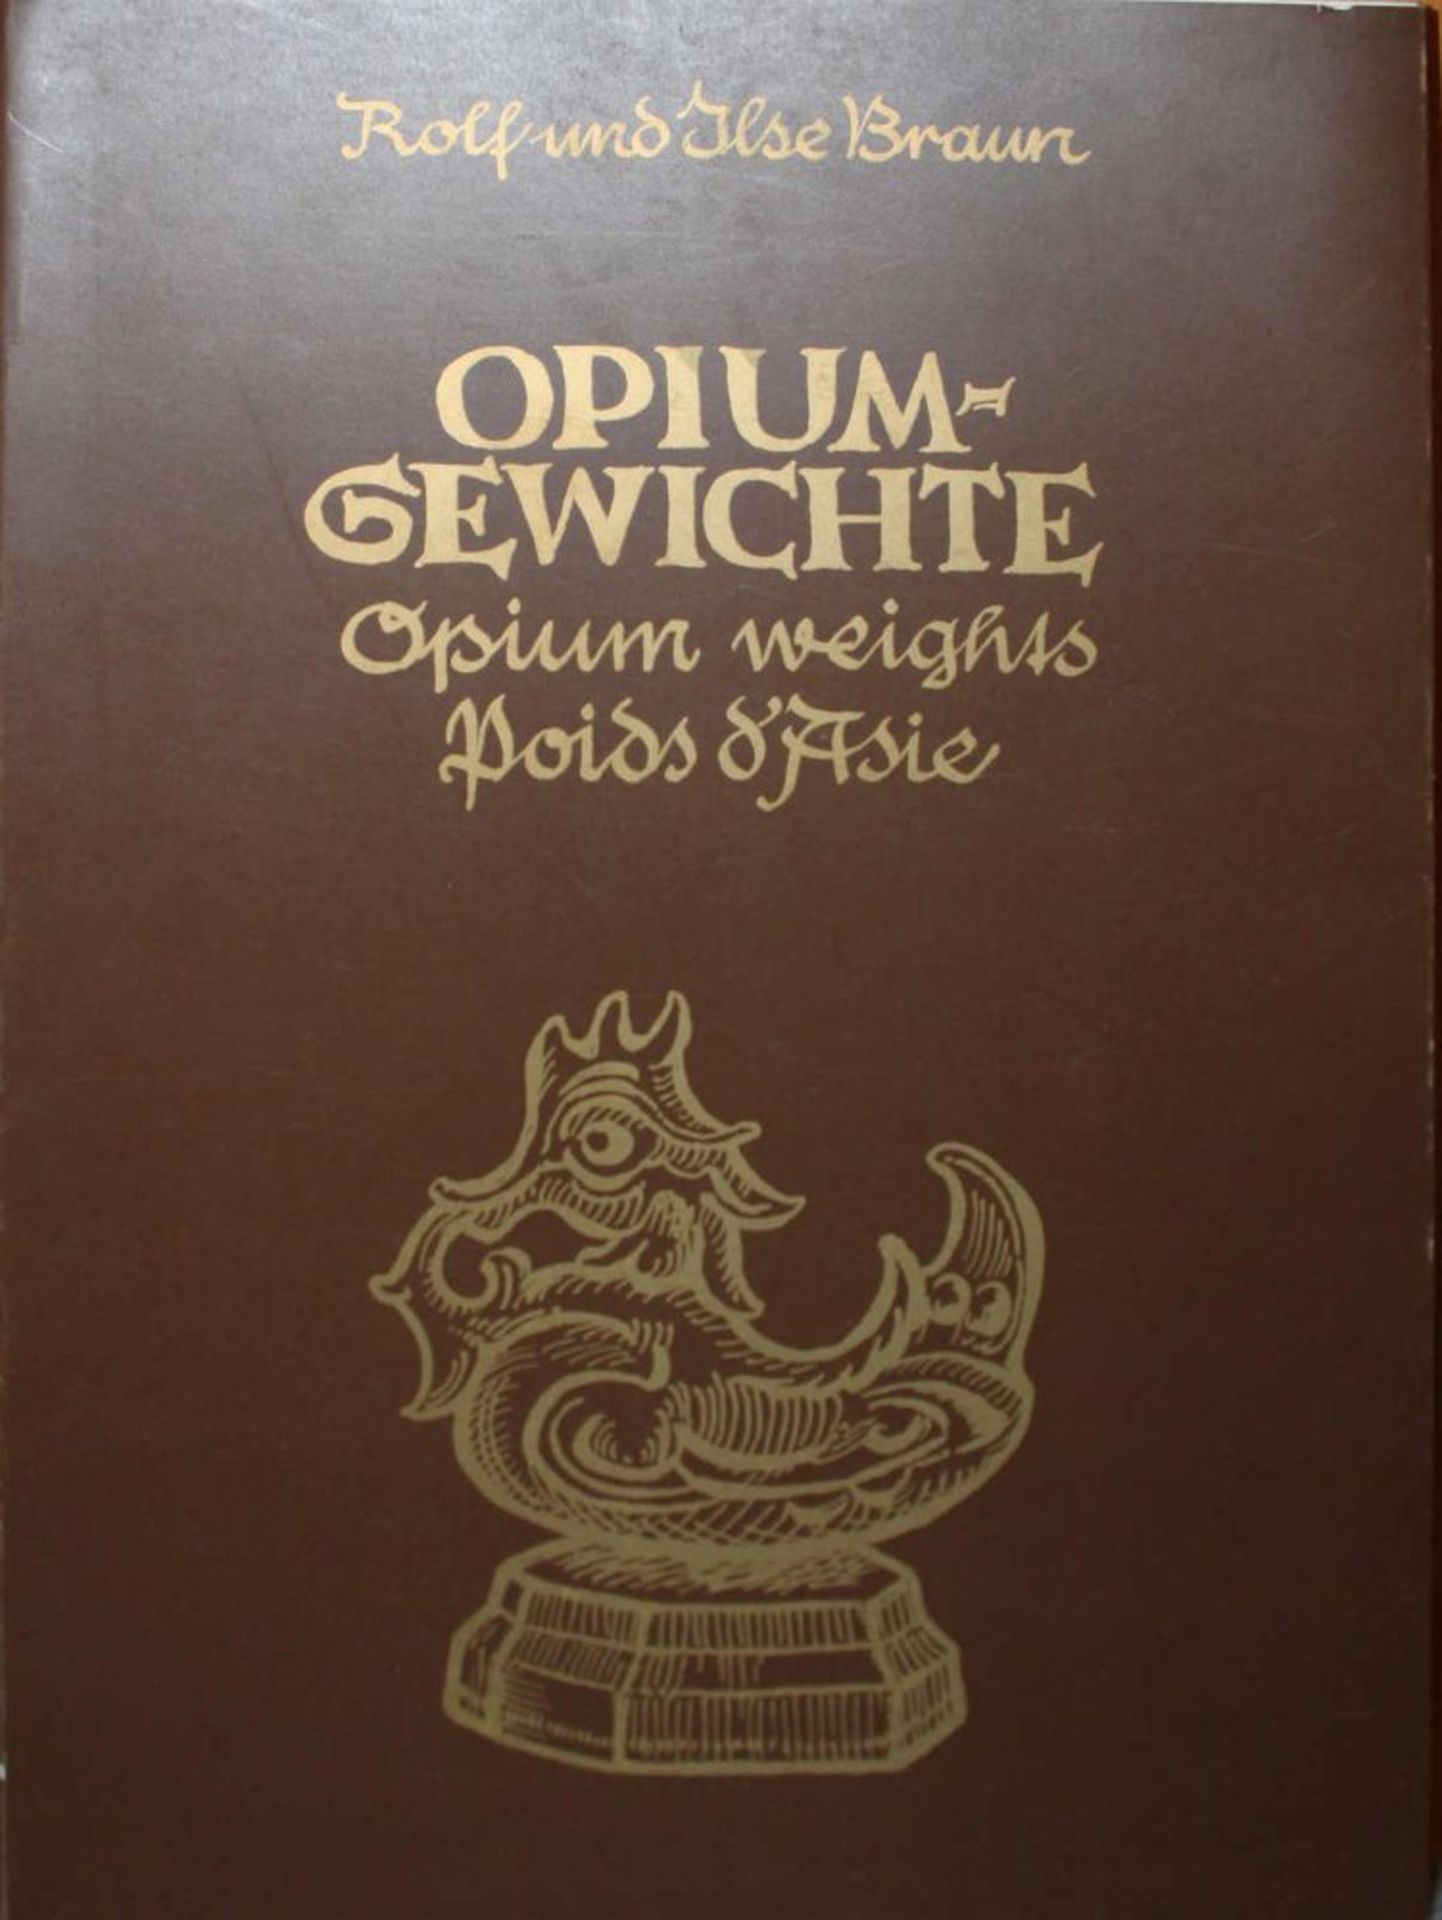 Buch "Opium Gewichte",von Rolf und Ilse Braun 1983